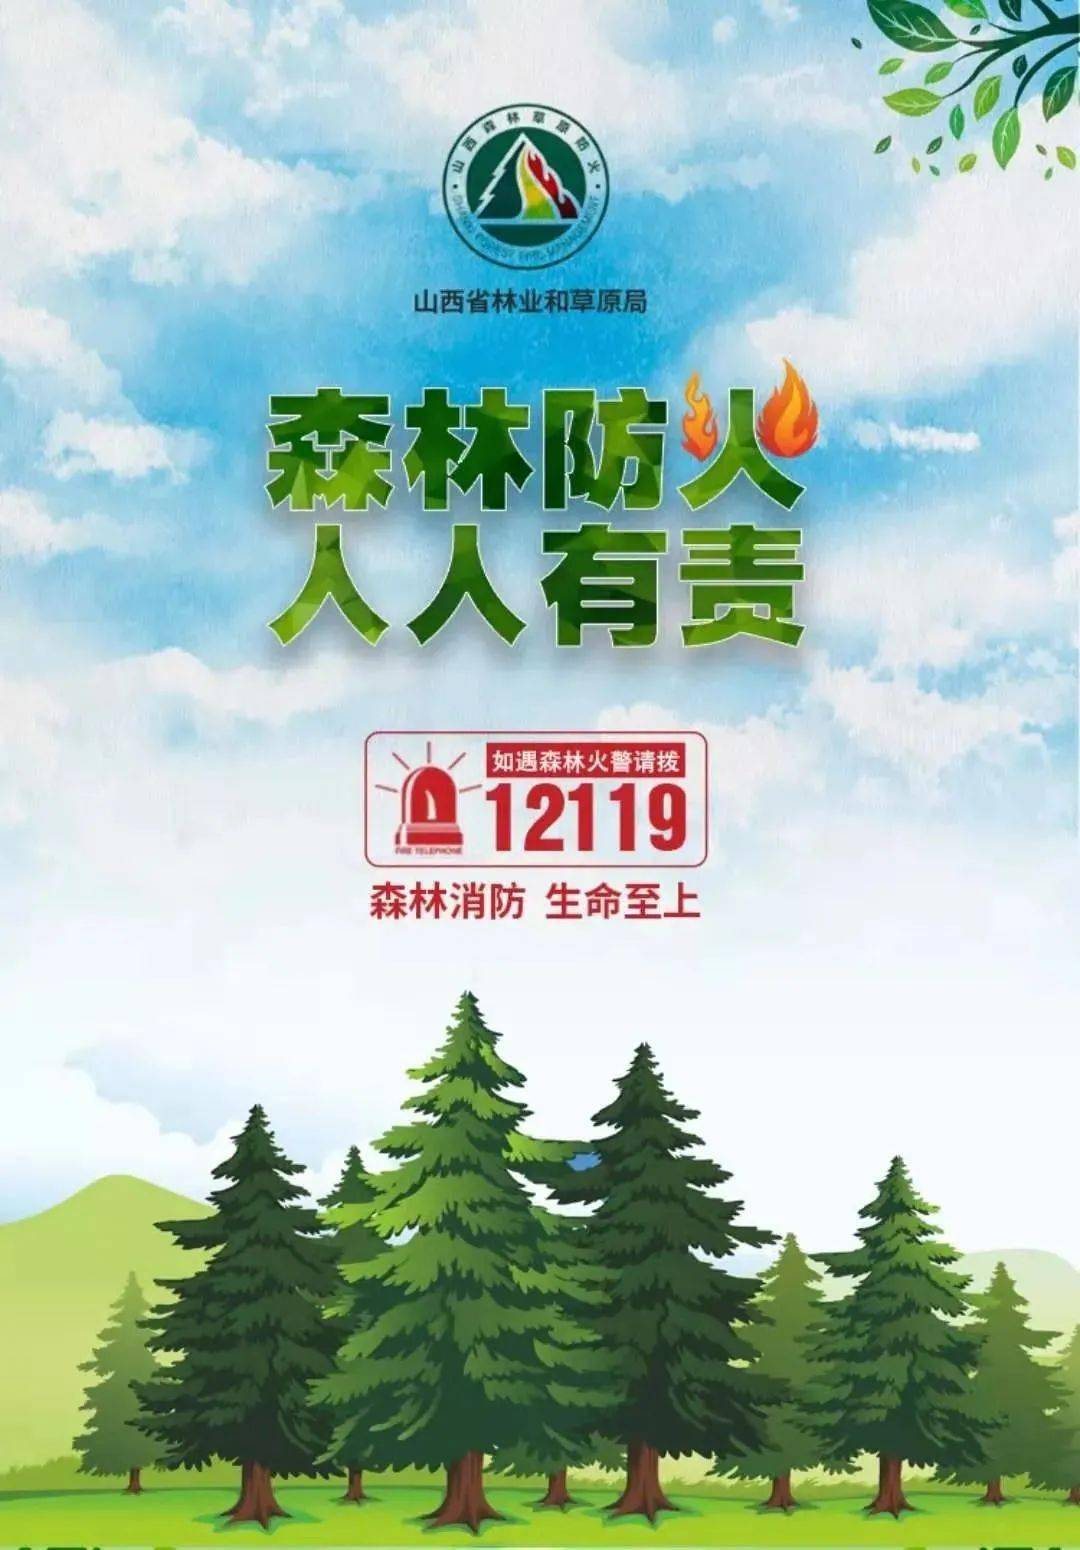 【扩散】森林和草原防火知识系列宣传海报(一)